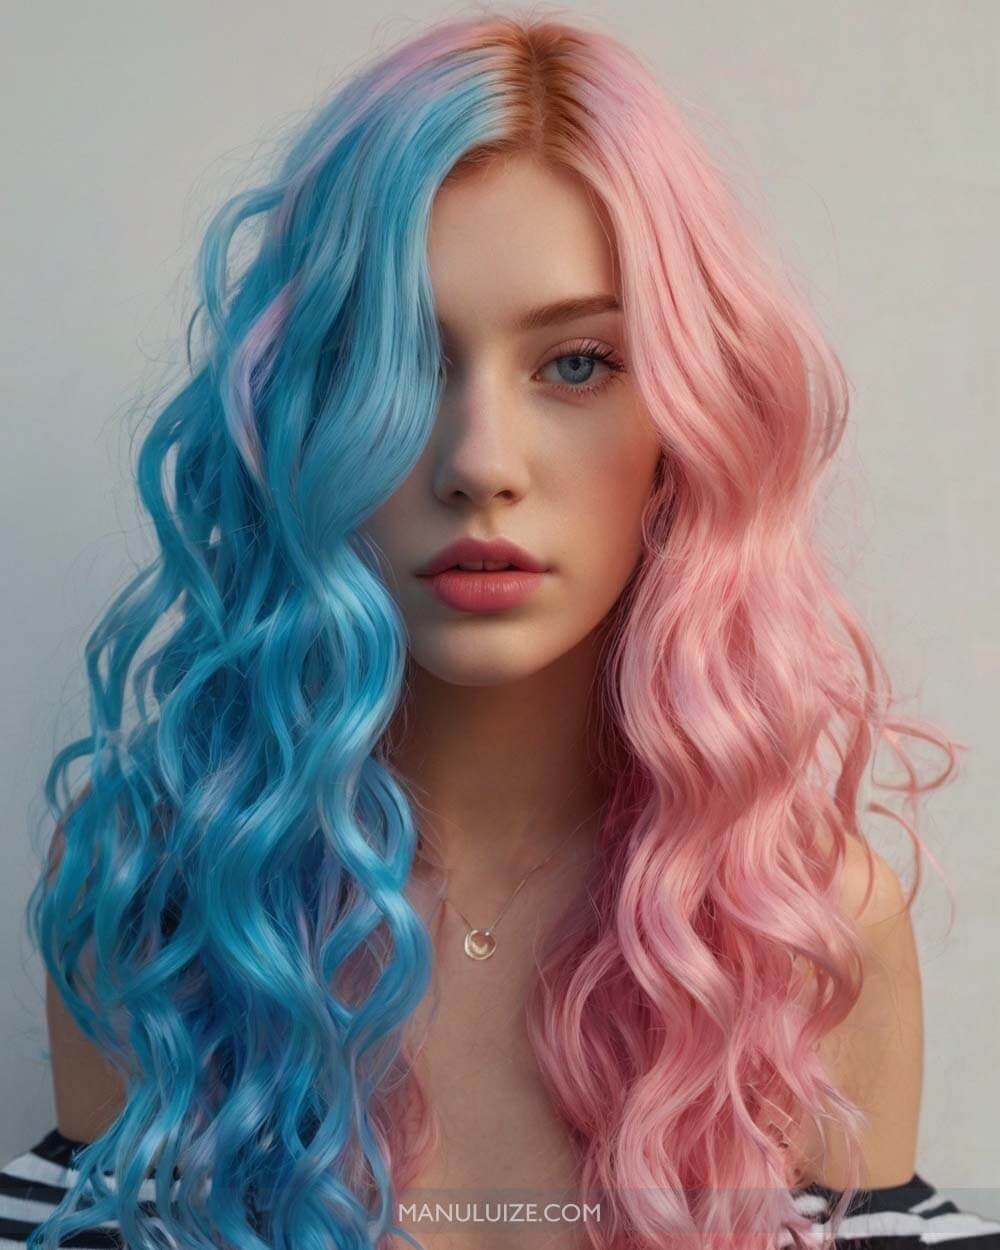 Blue & Pink Pastel Hair